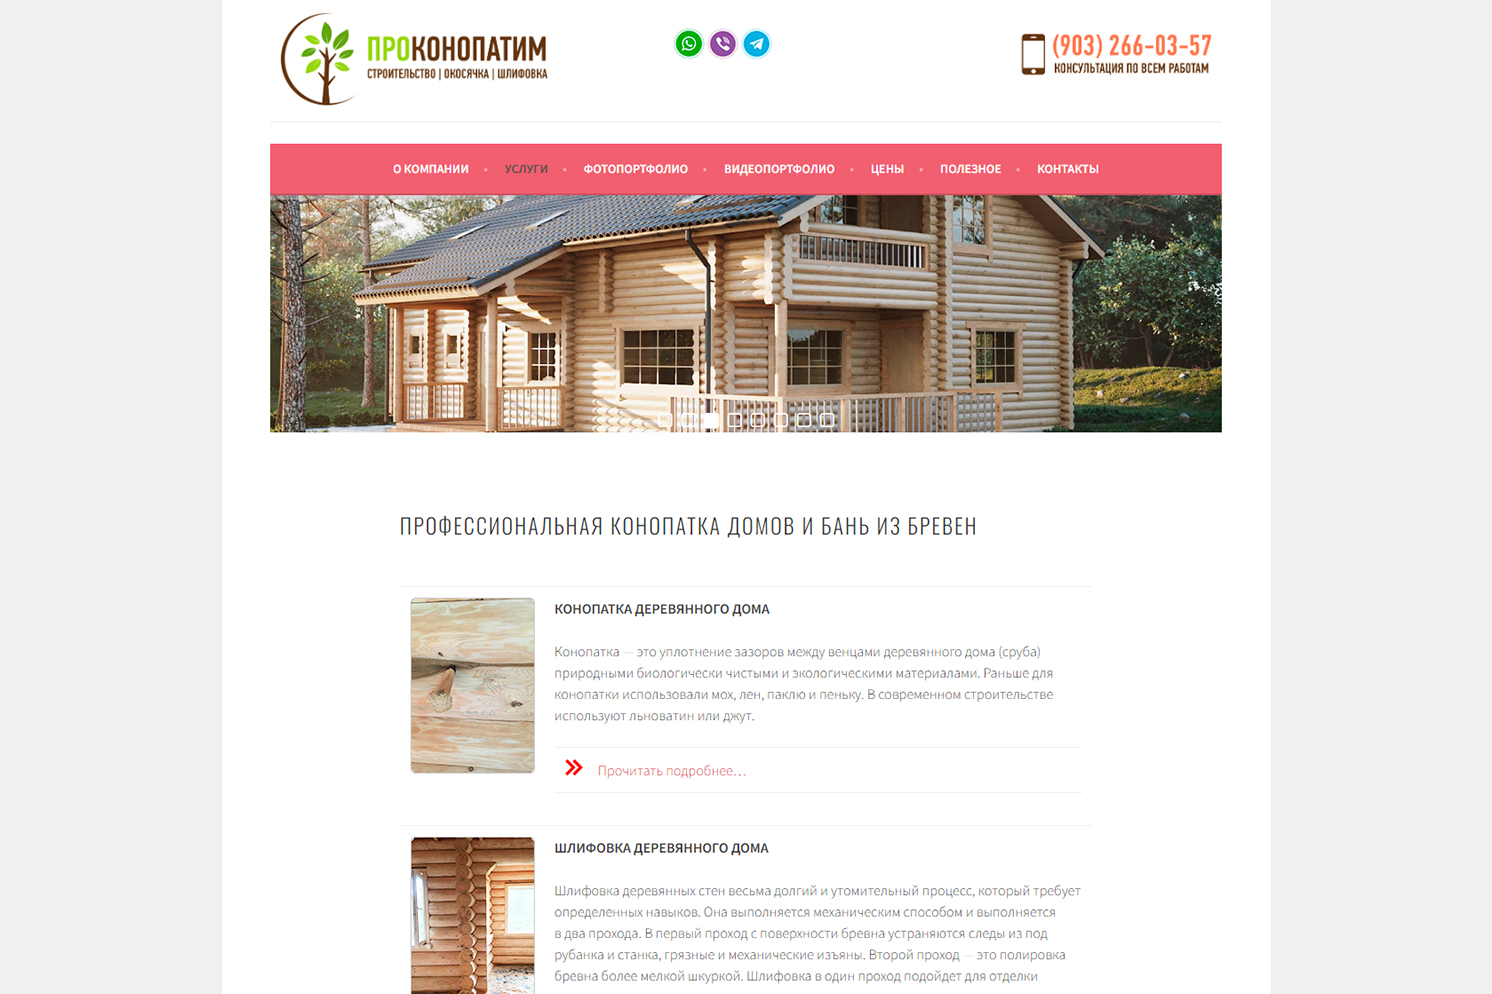 Сайт prokonopatim.ru услуги по строительству, конопатке, шлифовке и окосячке деревянного дома